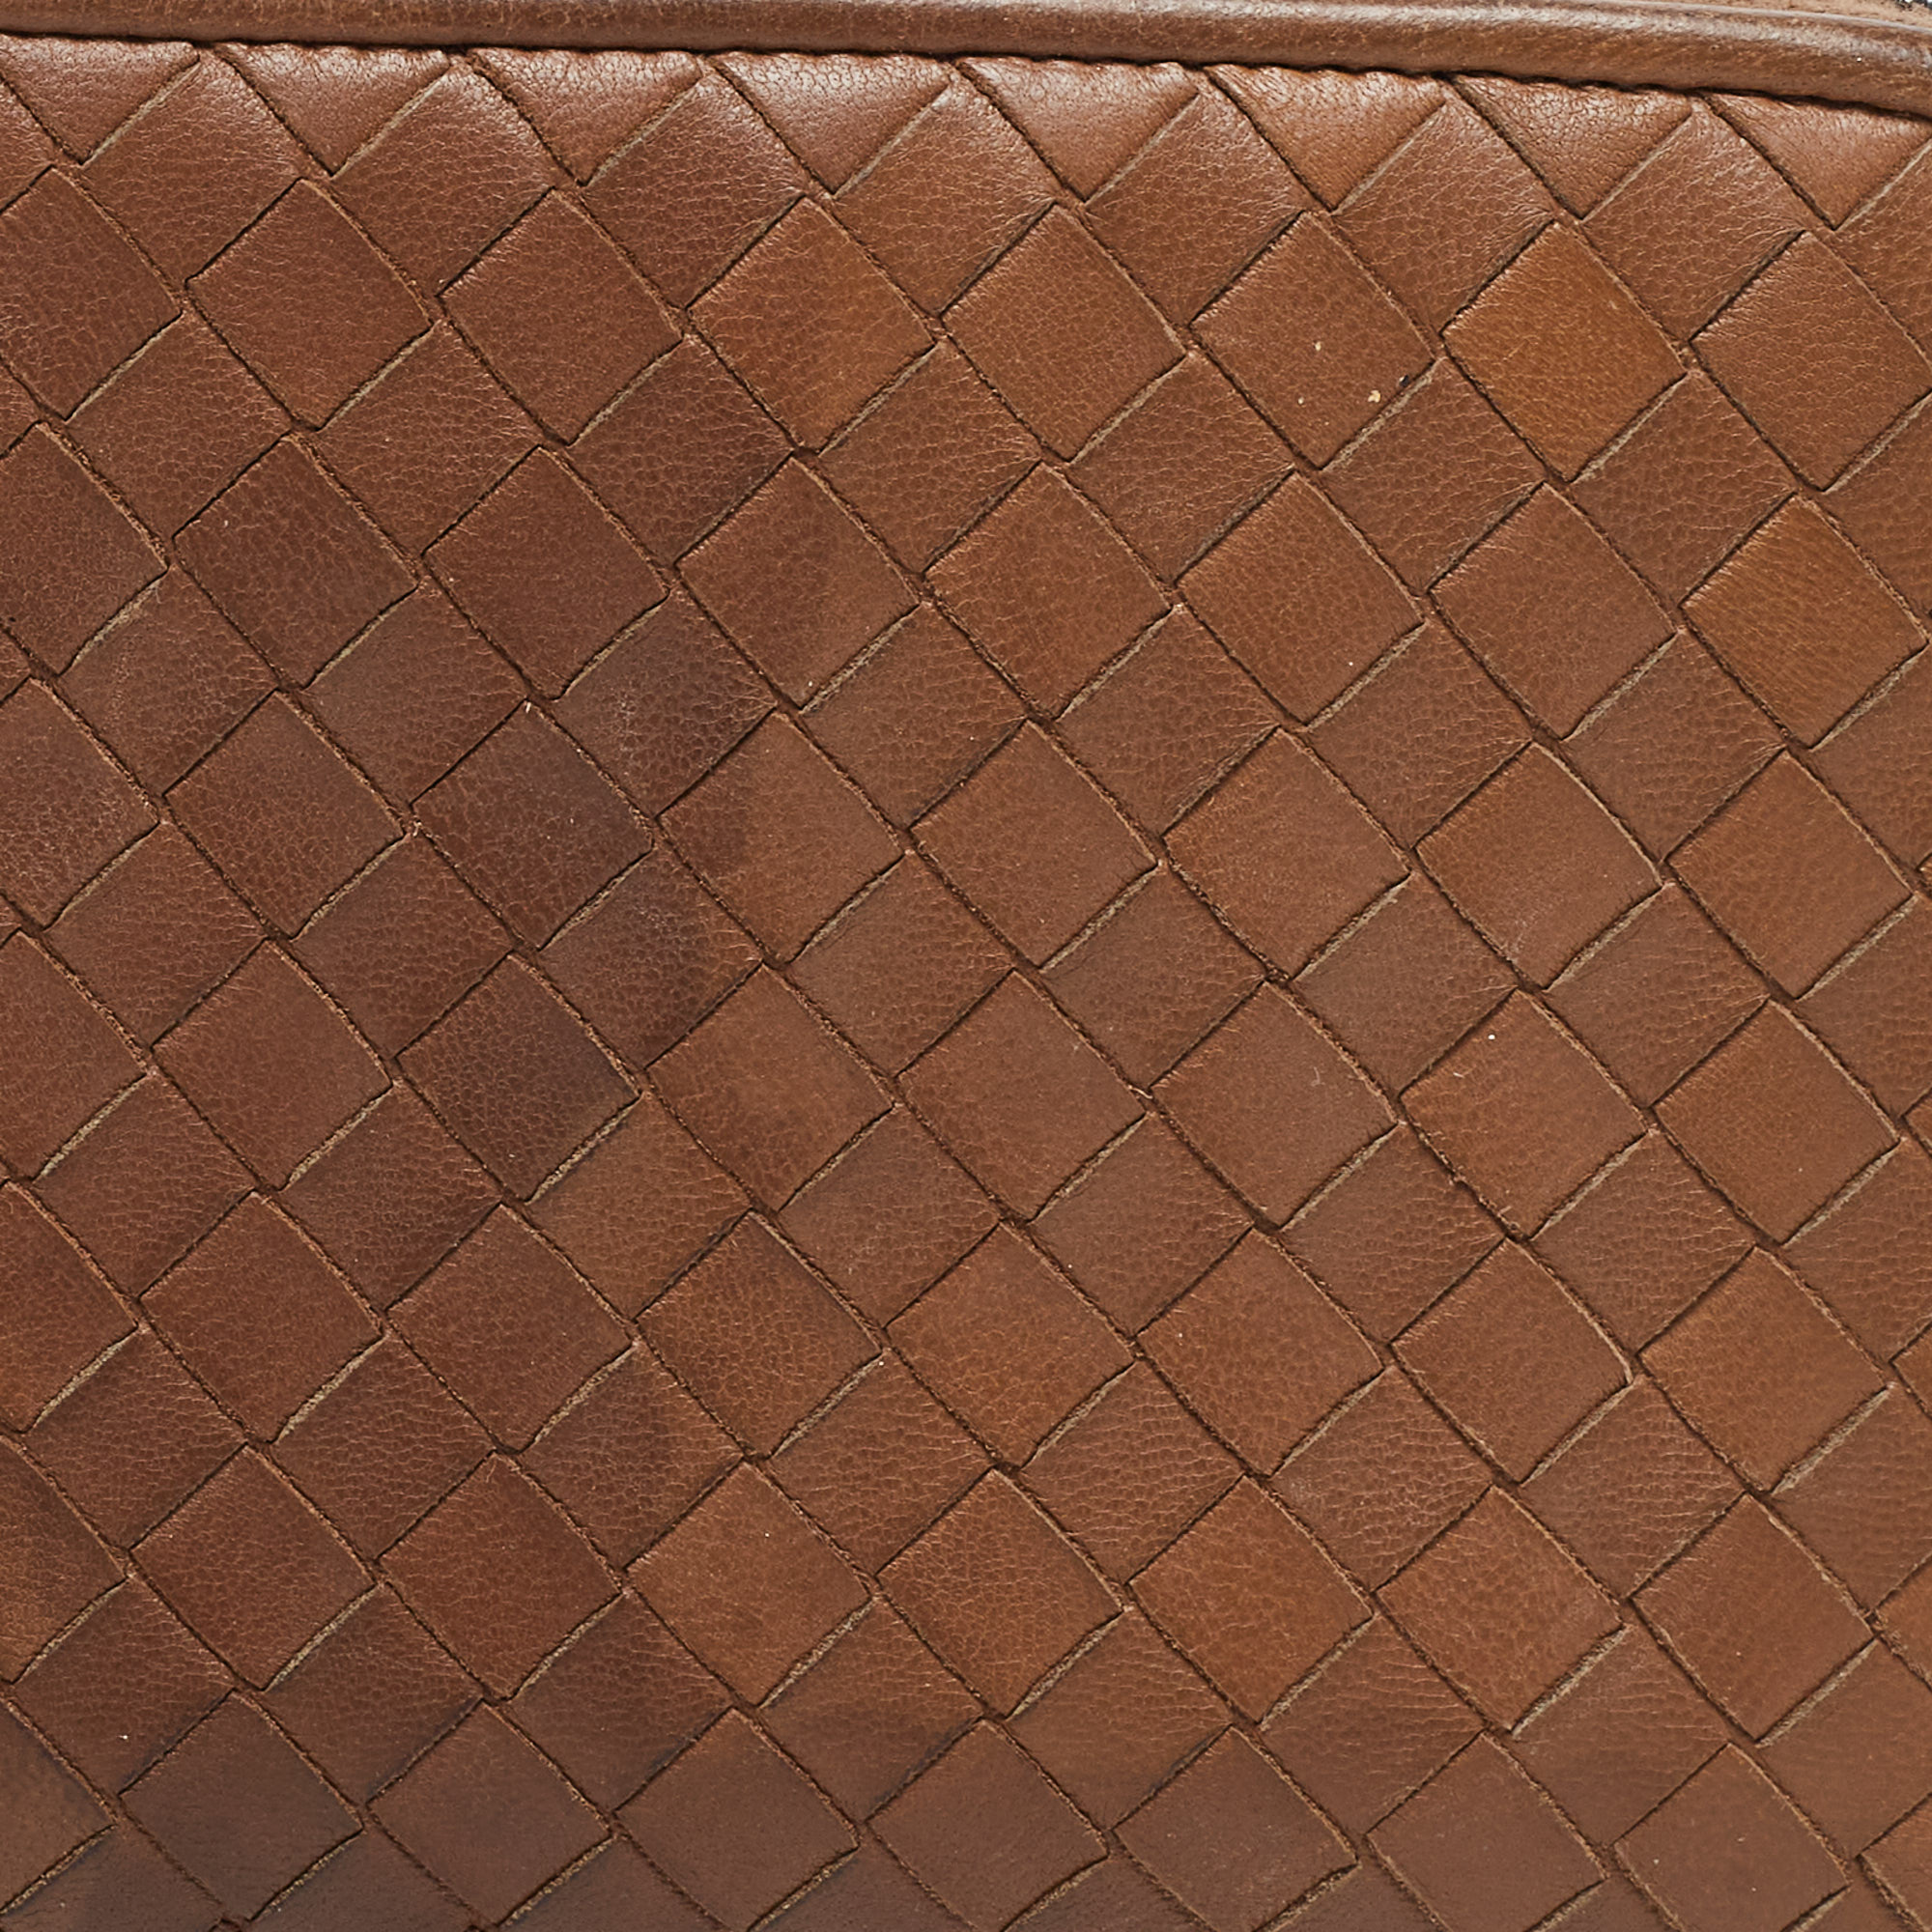 Bottega Veneta Brown Intrecciato Leather Zip Around Wallet